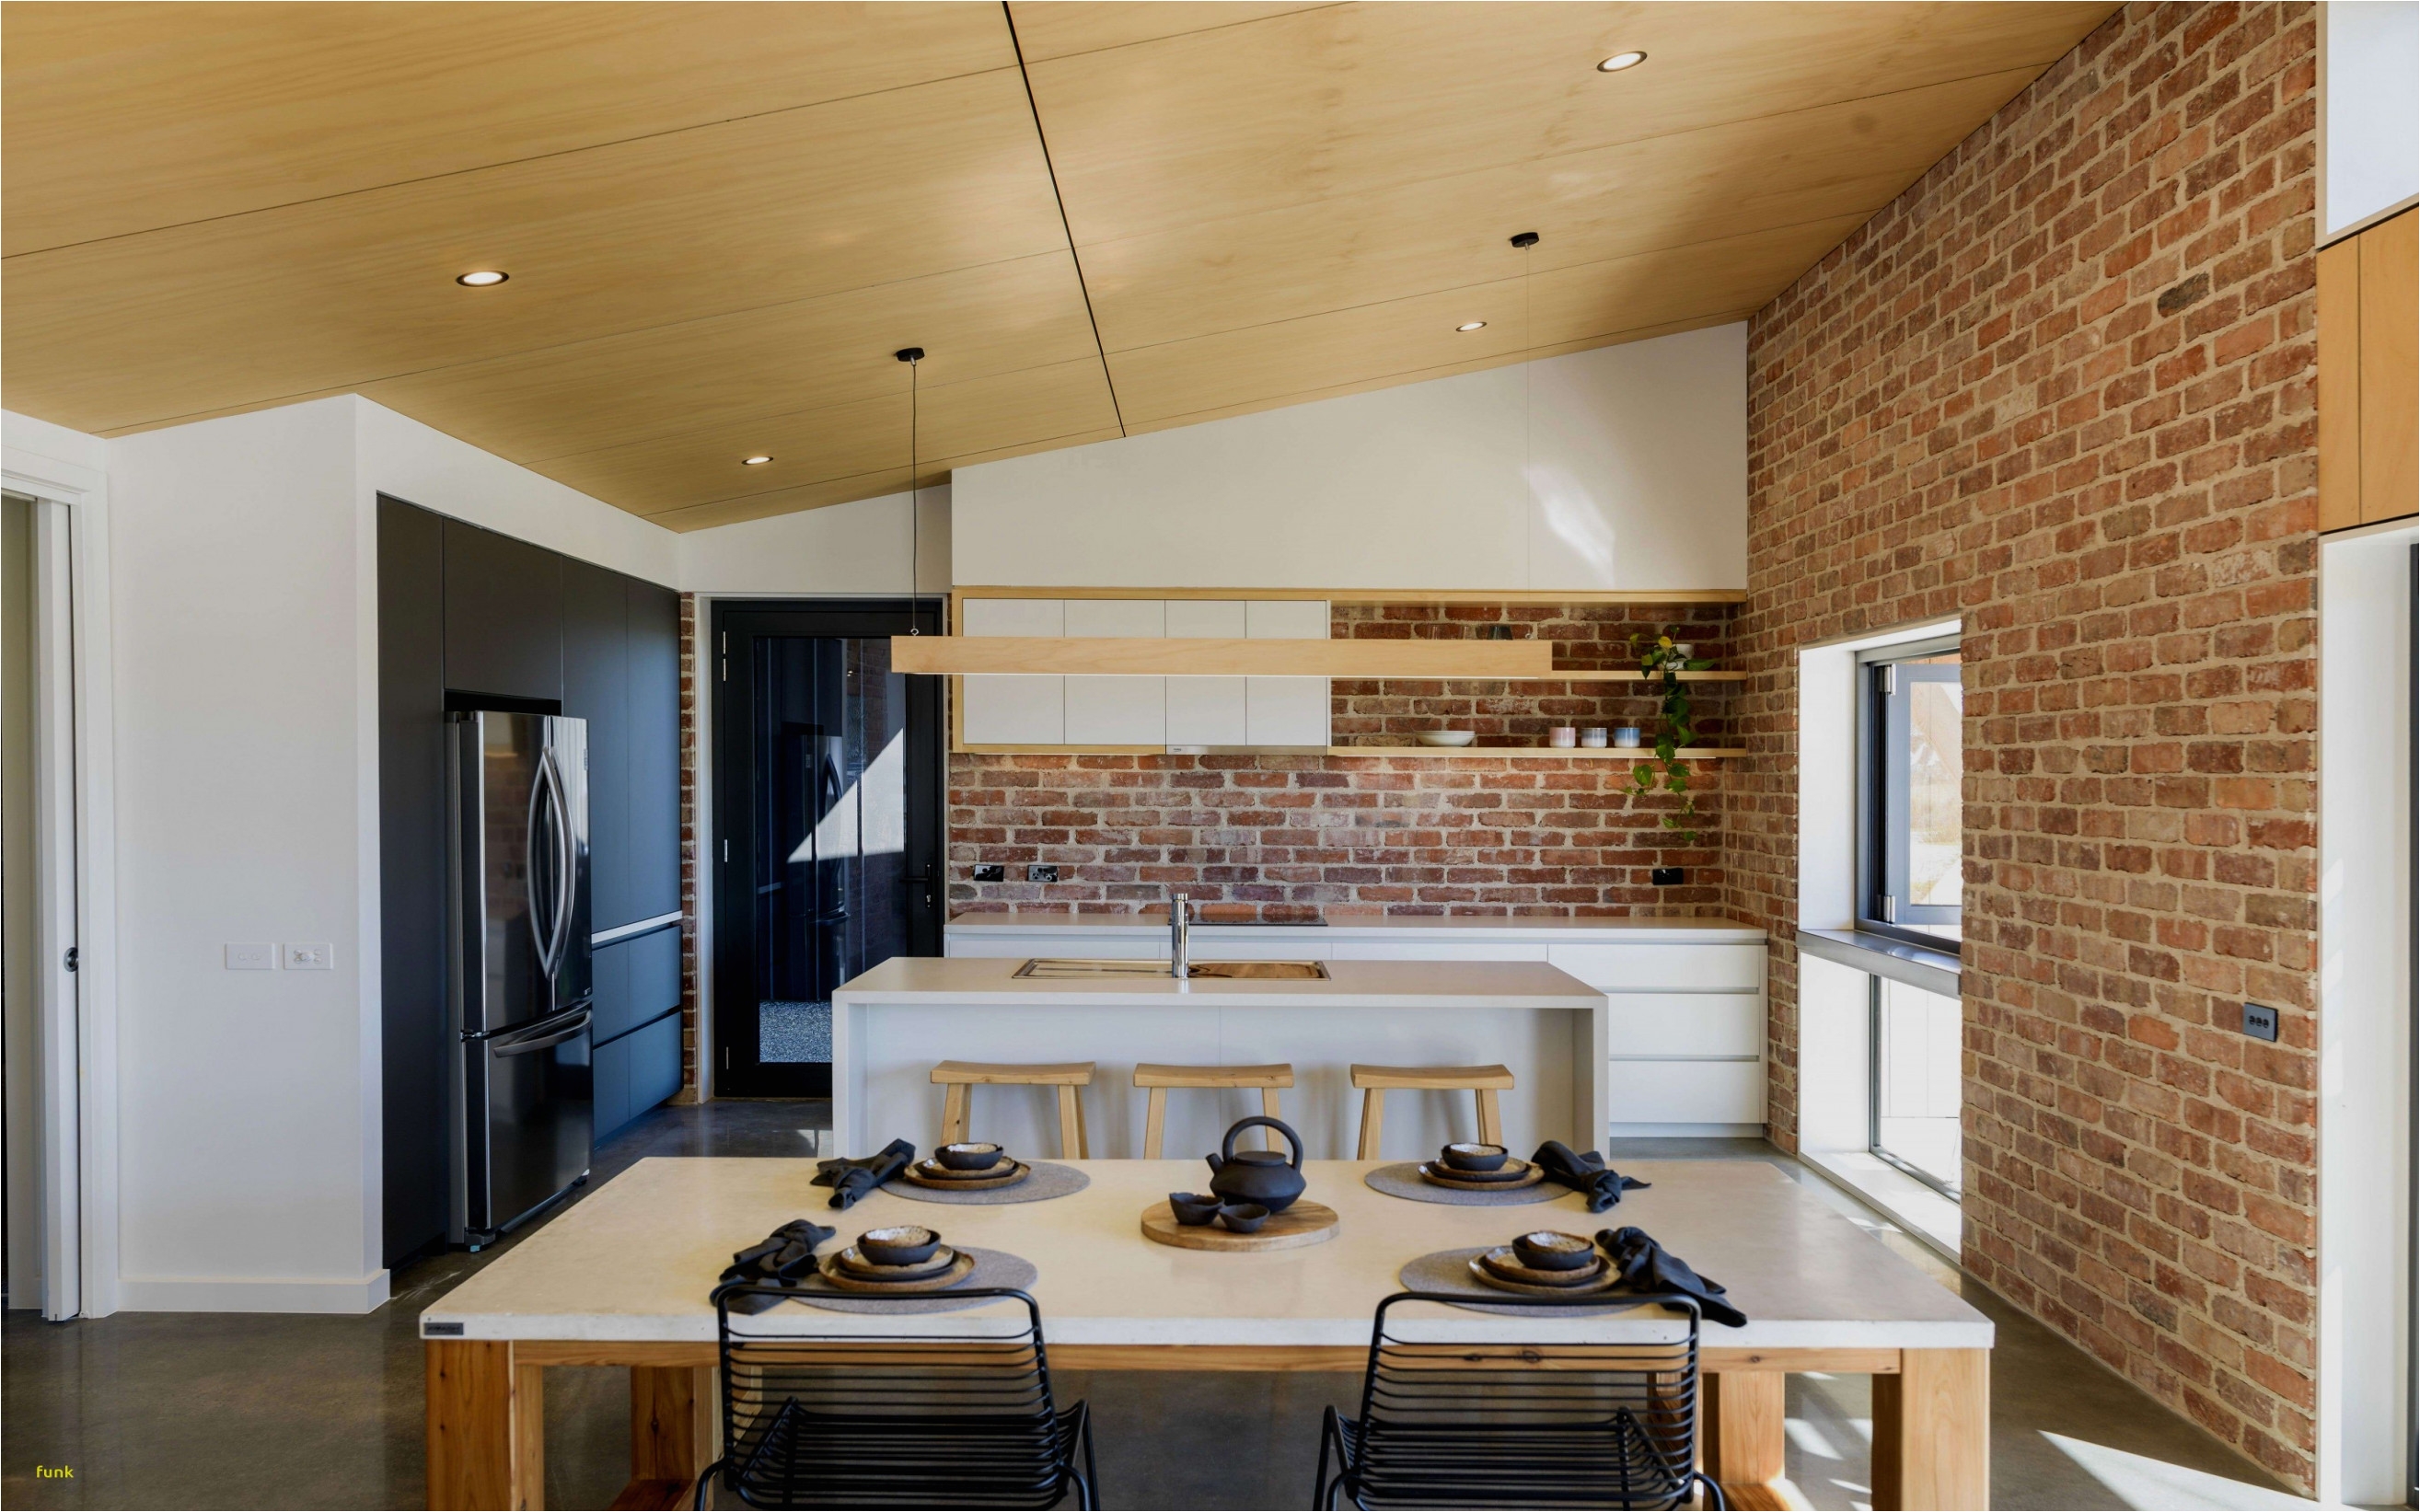 Modern Kitchen Interior Design Contemporary Kitchen Design sooryfo